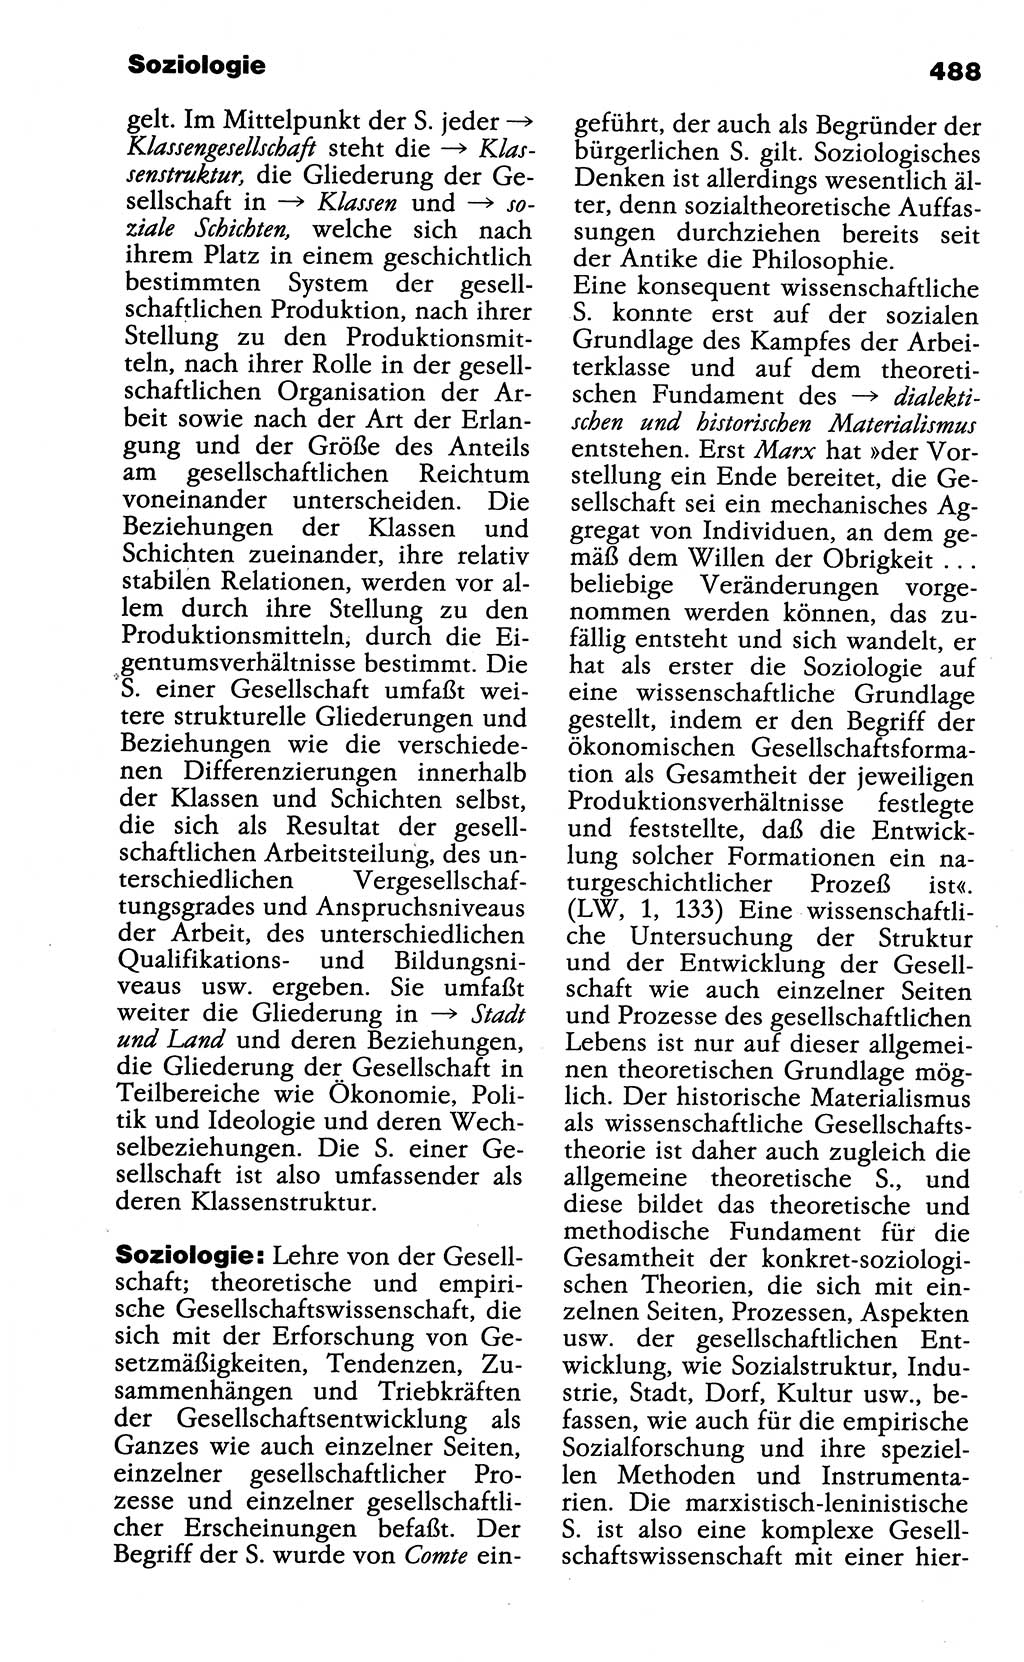 Wörterbuch der marxistisch-leninistischen Philosophie [Deutsche Demokratische Republik (DDR)] 1985, Seite 488 (Wb. ML Phil. DDR 1985, S. 488)